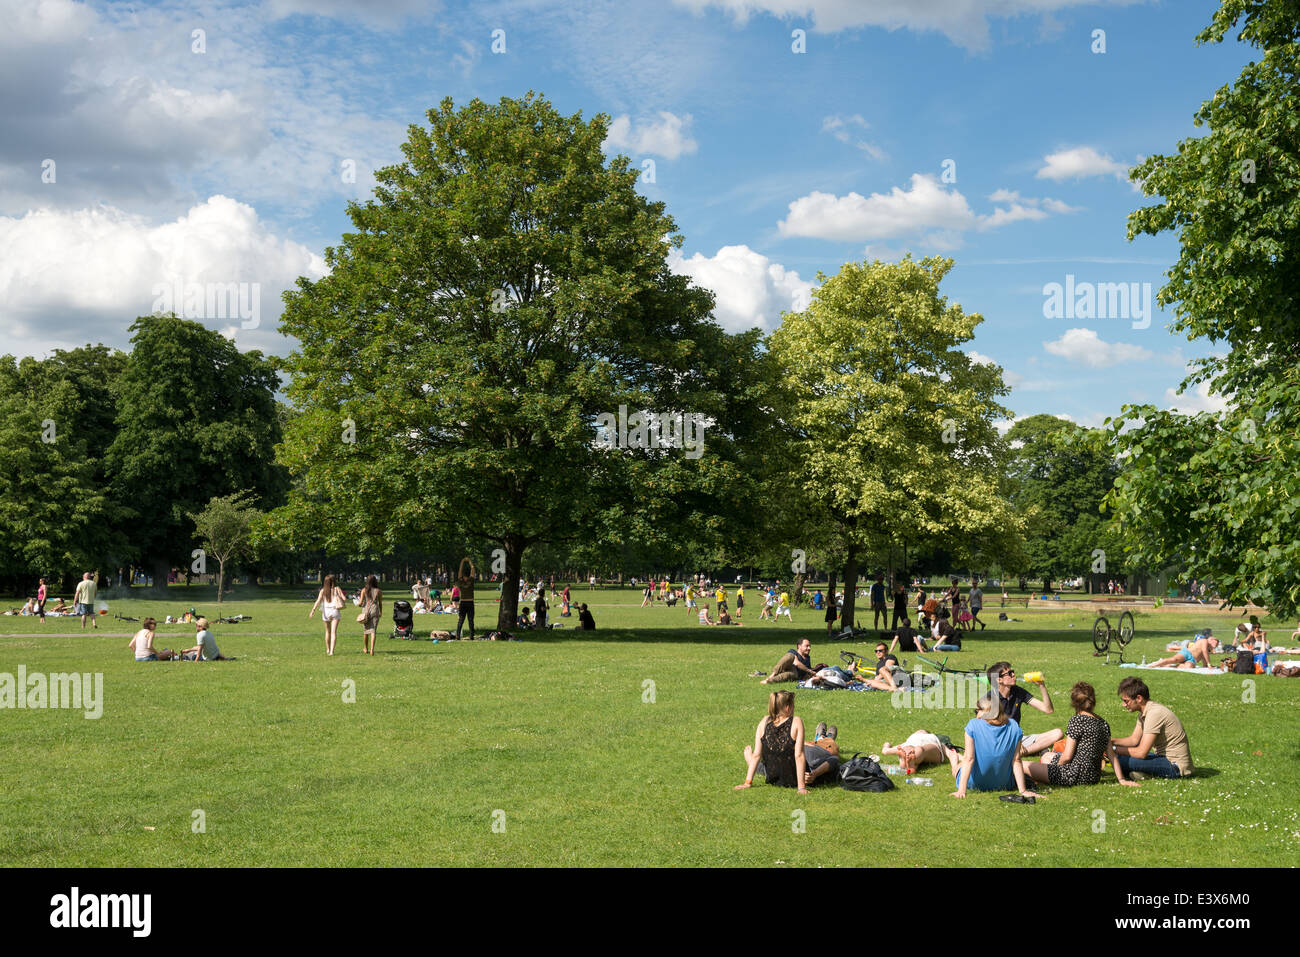 El parque Victoria, Hackney, Londres, Reino Unido. Foto de stock